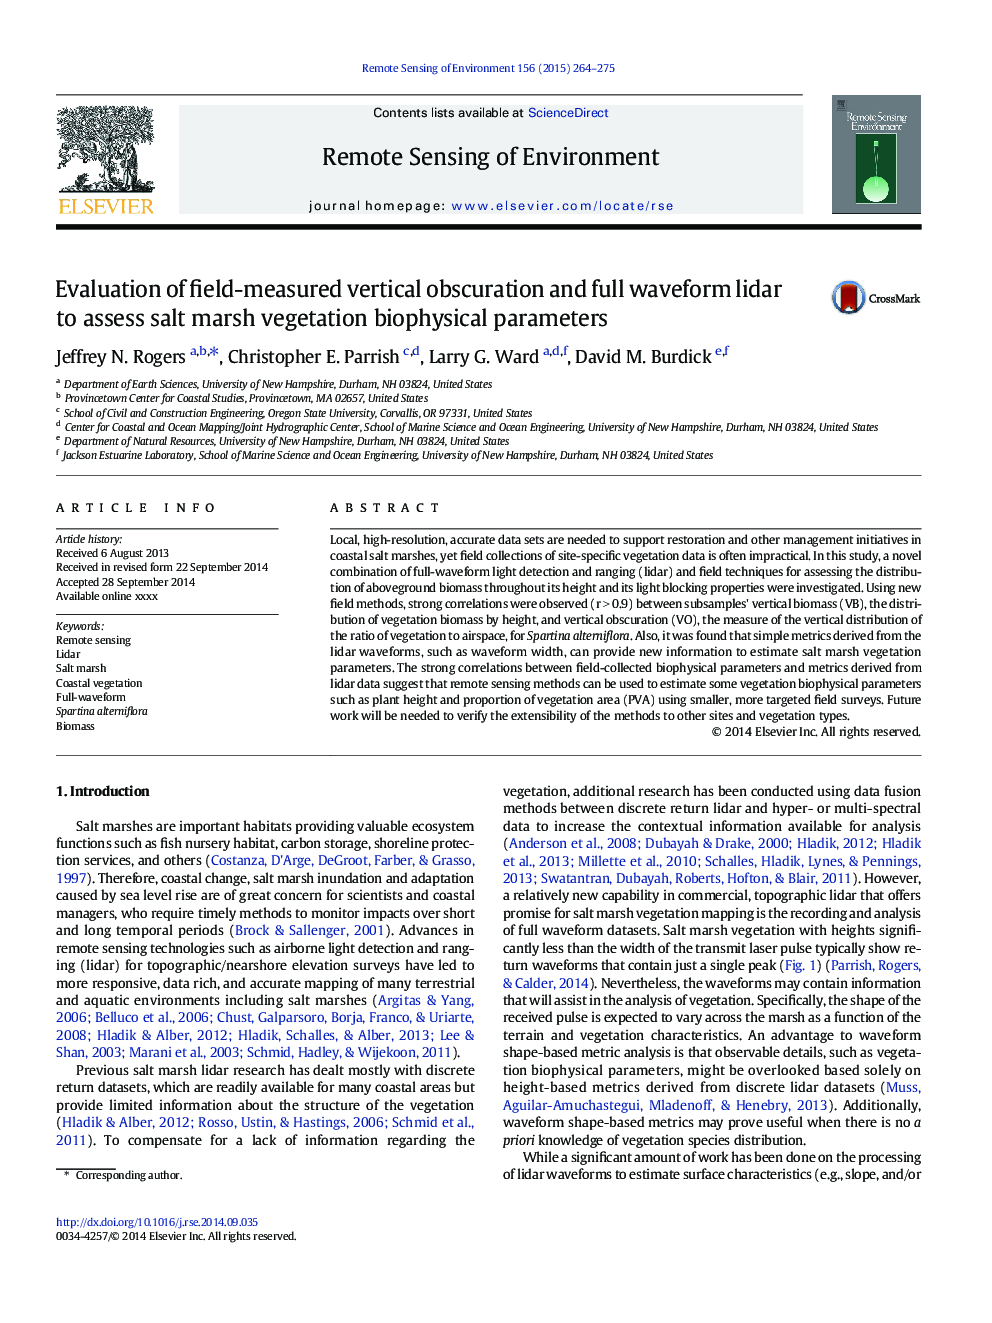 Evaluation of field-measured vertical obscuration and full waveform lidar to assess salt marsh vegetation biophysical parameters